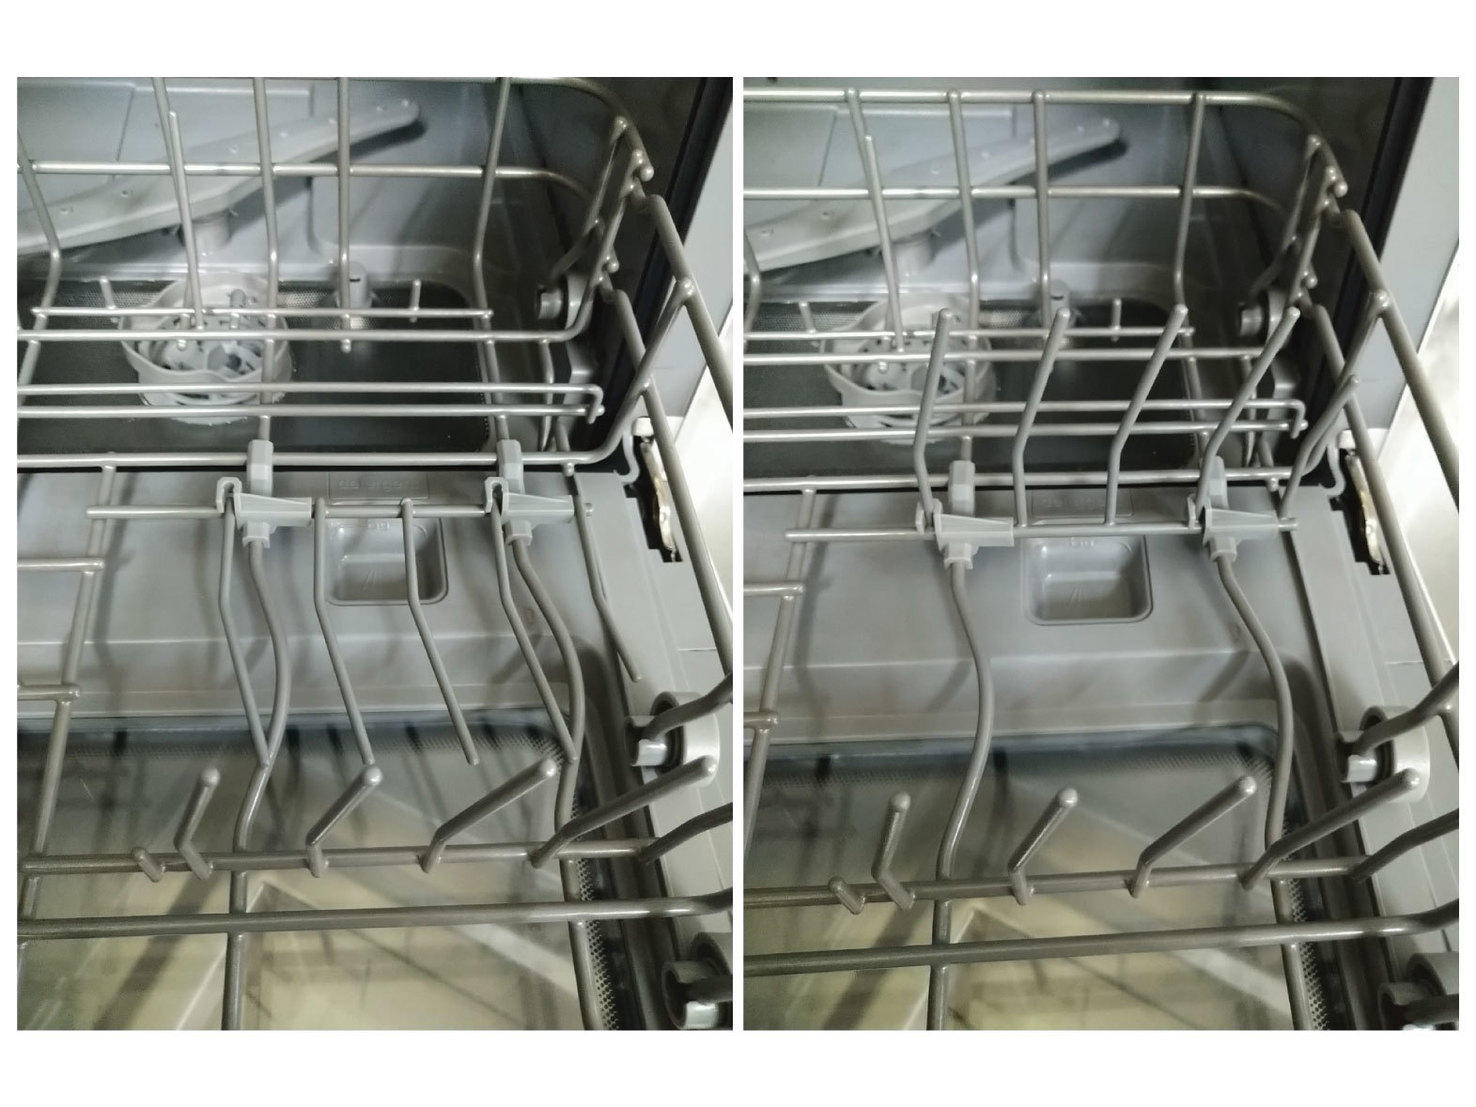 ◤解決猜拳洗碗問題◢Midea 美的 M1洗碗機 免安裝、即買即洗啦!!